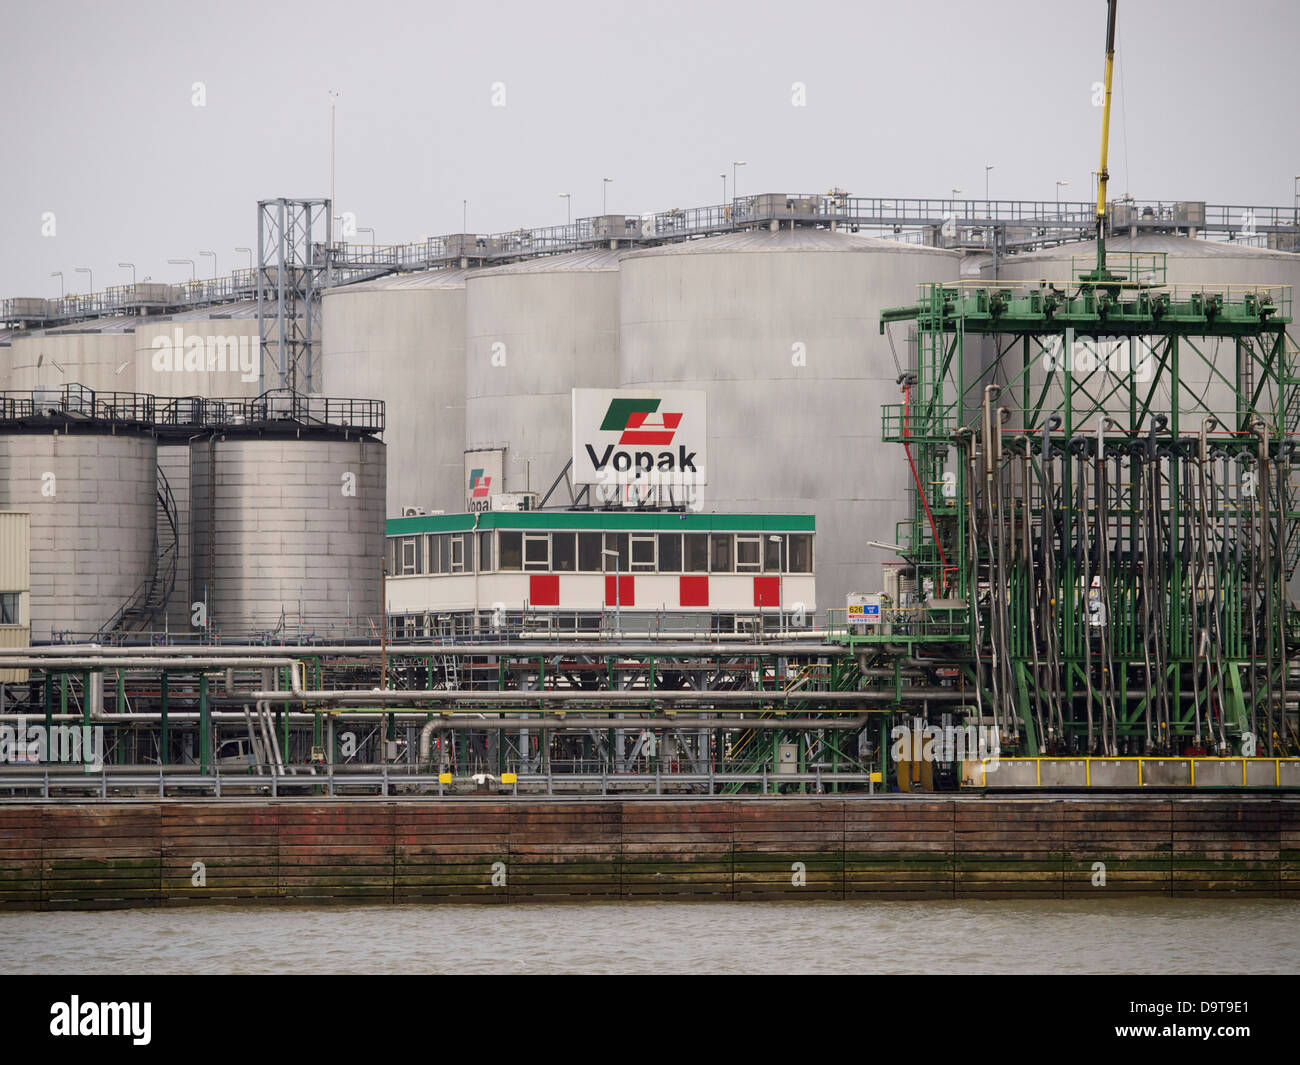 Vopak Öl-Lagerung und Distribution-Anlage im Hafen von Rotterdam, die Niederlande Stockfoto